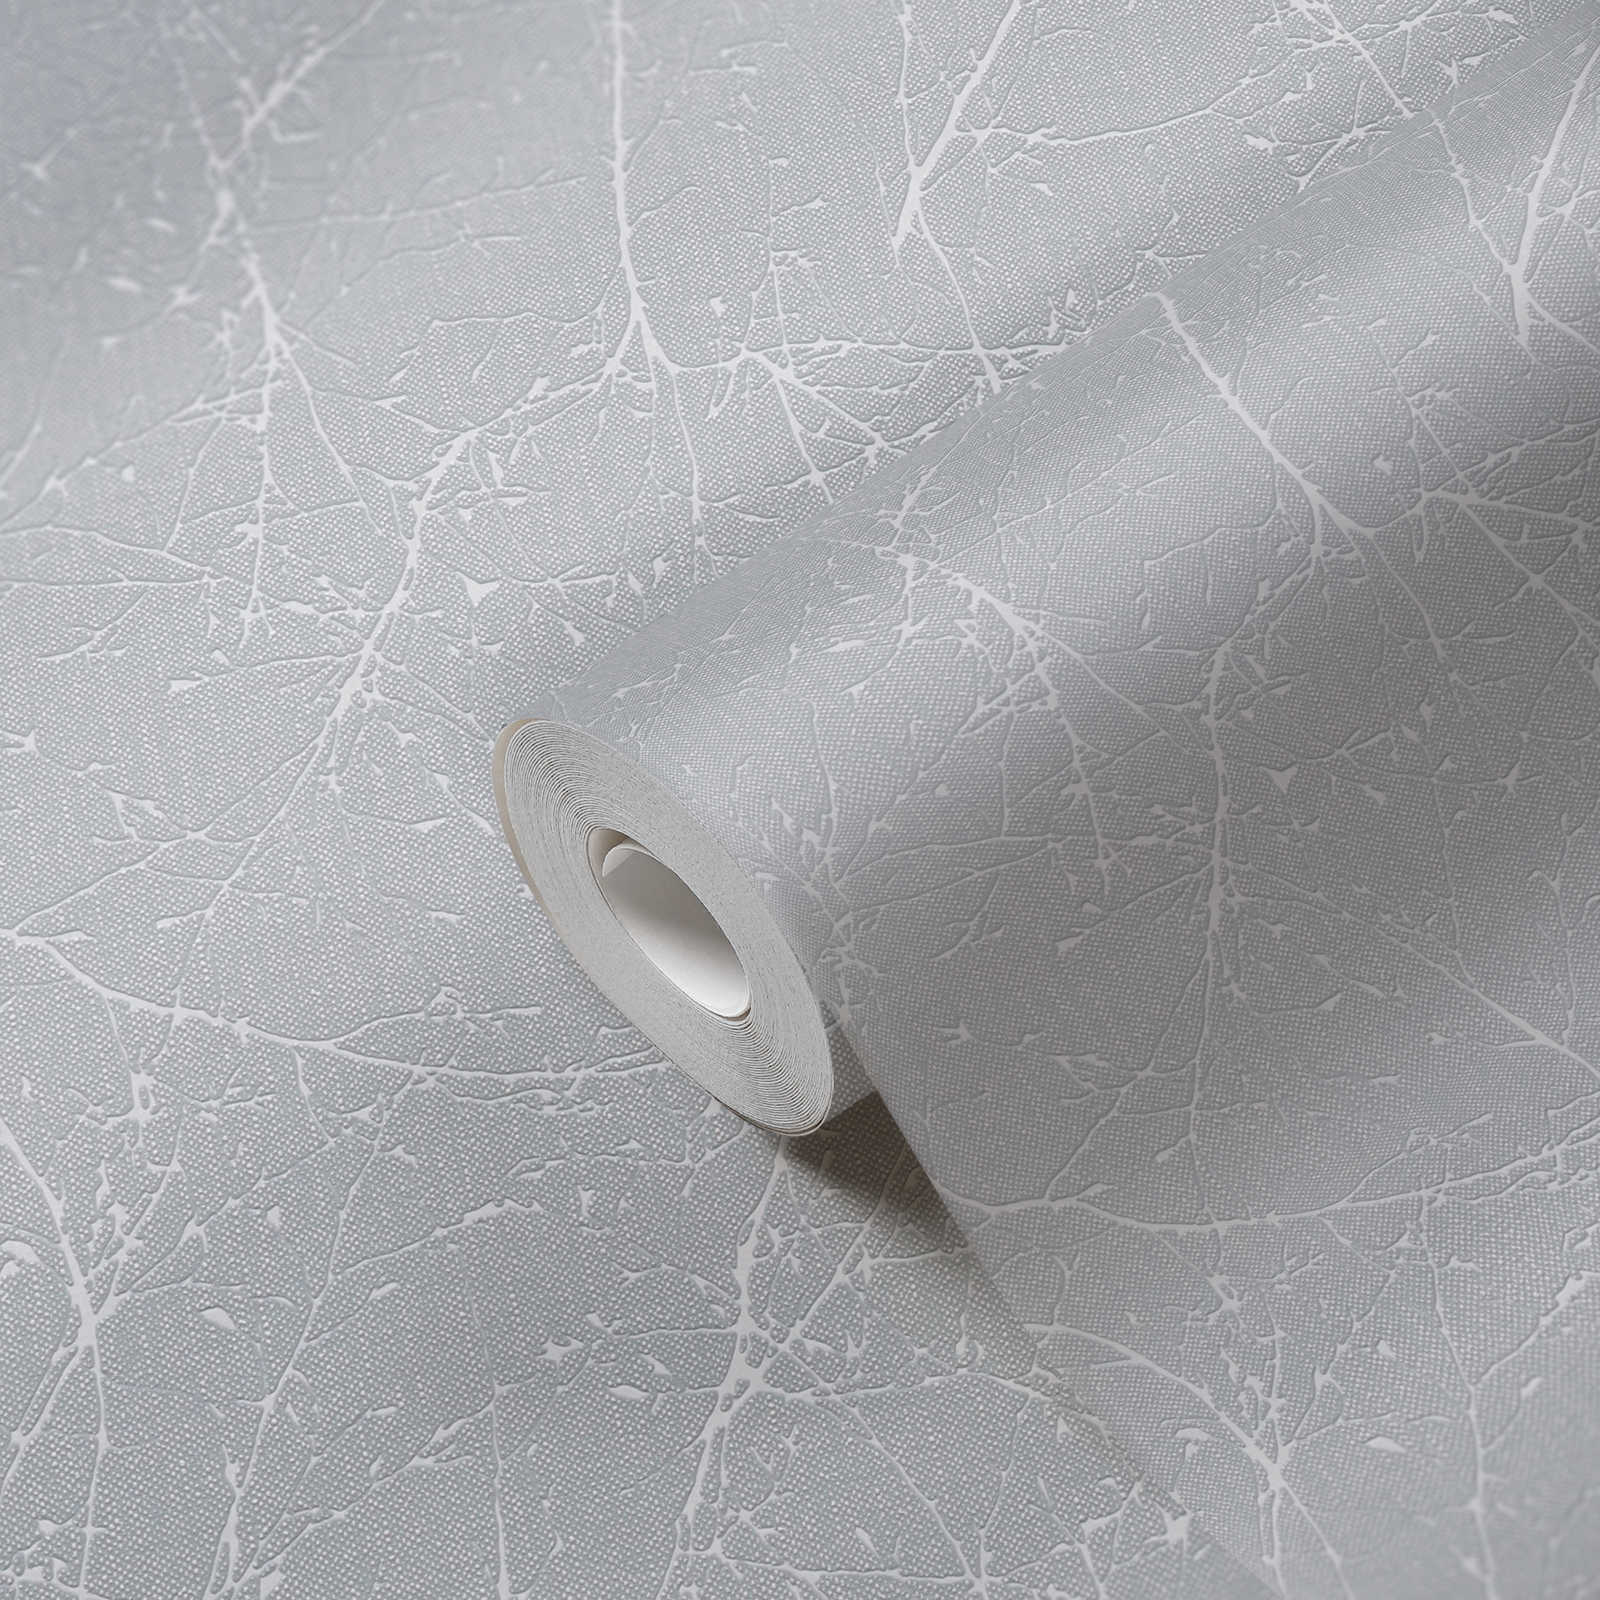             Carta da parati in tessuto non tessuto con motivo a rami e struttura leggera - grigio chiaro, bianco
        